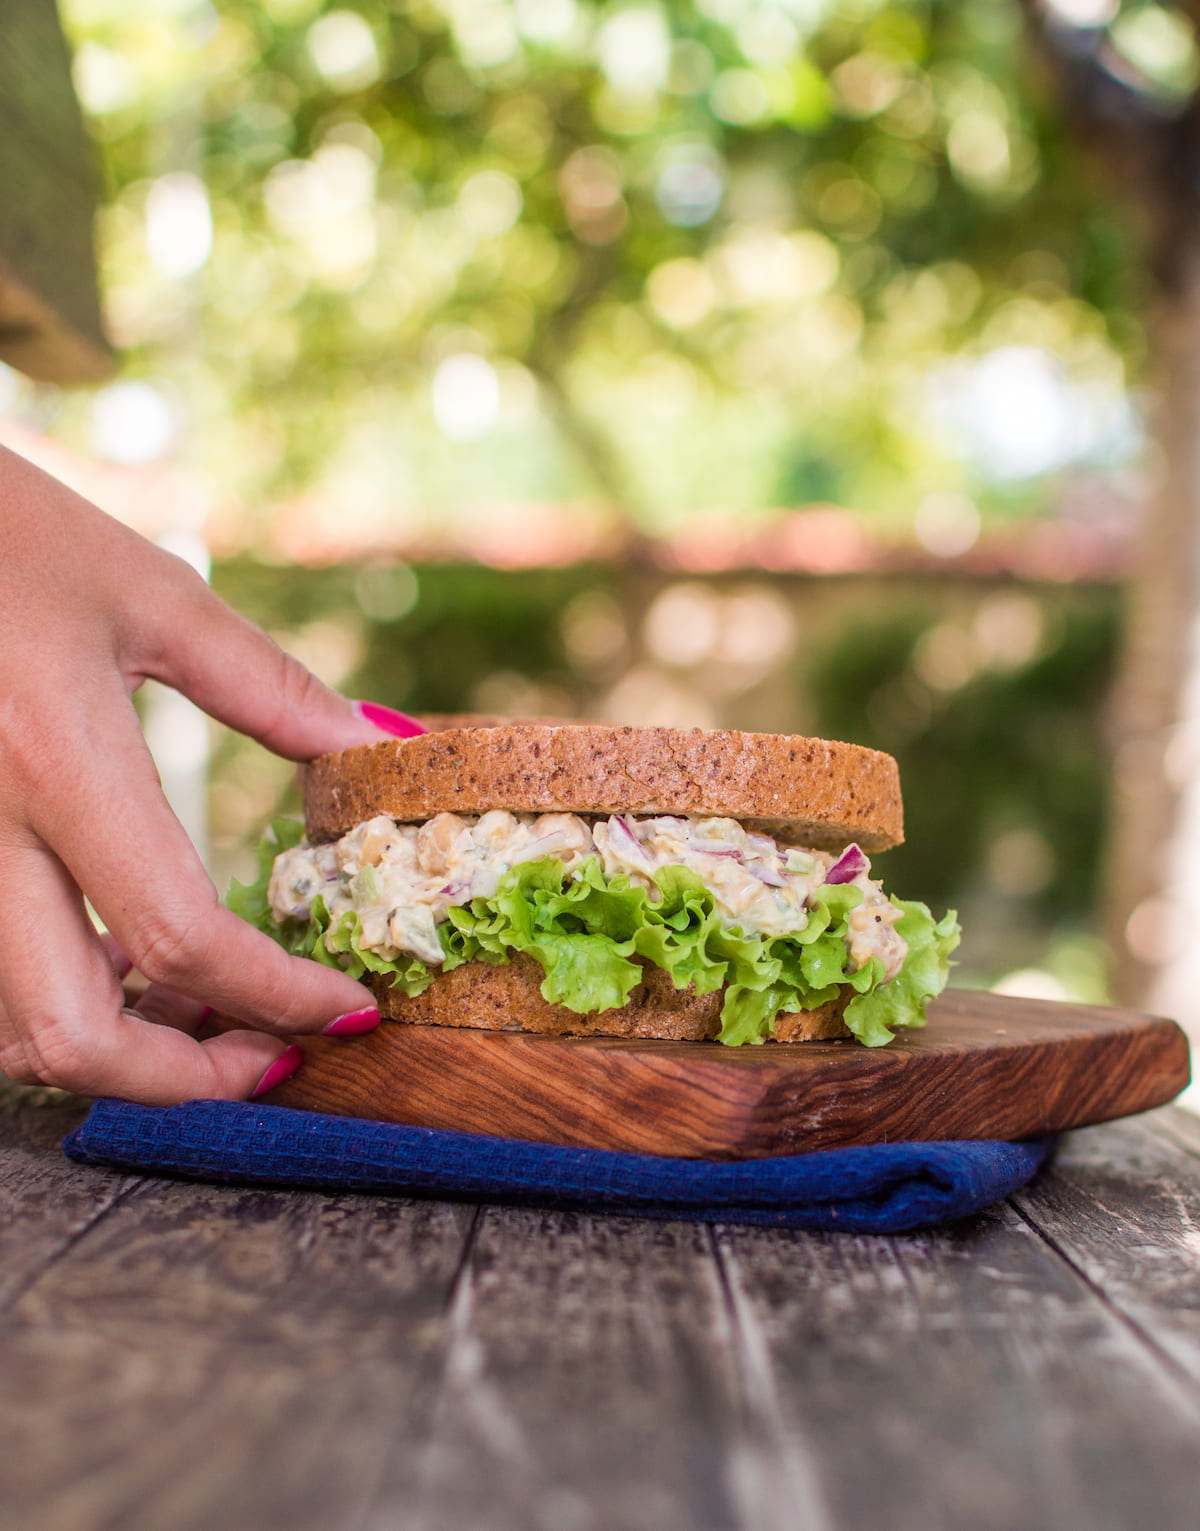 A hand reaching for a vegan chicken salad sandwich.